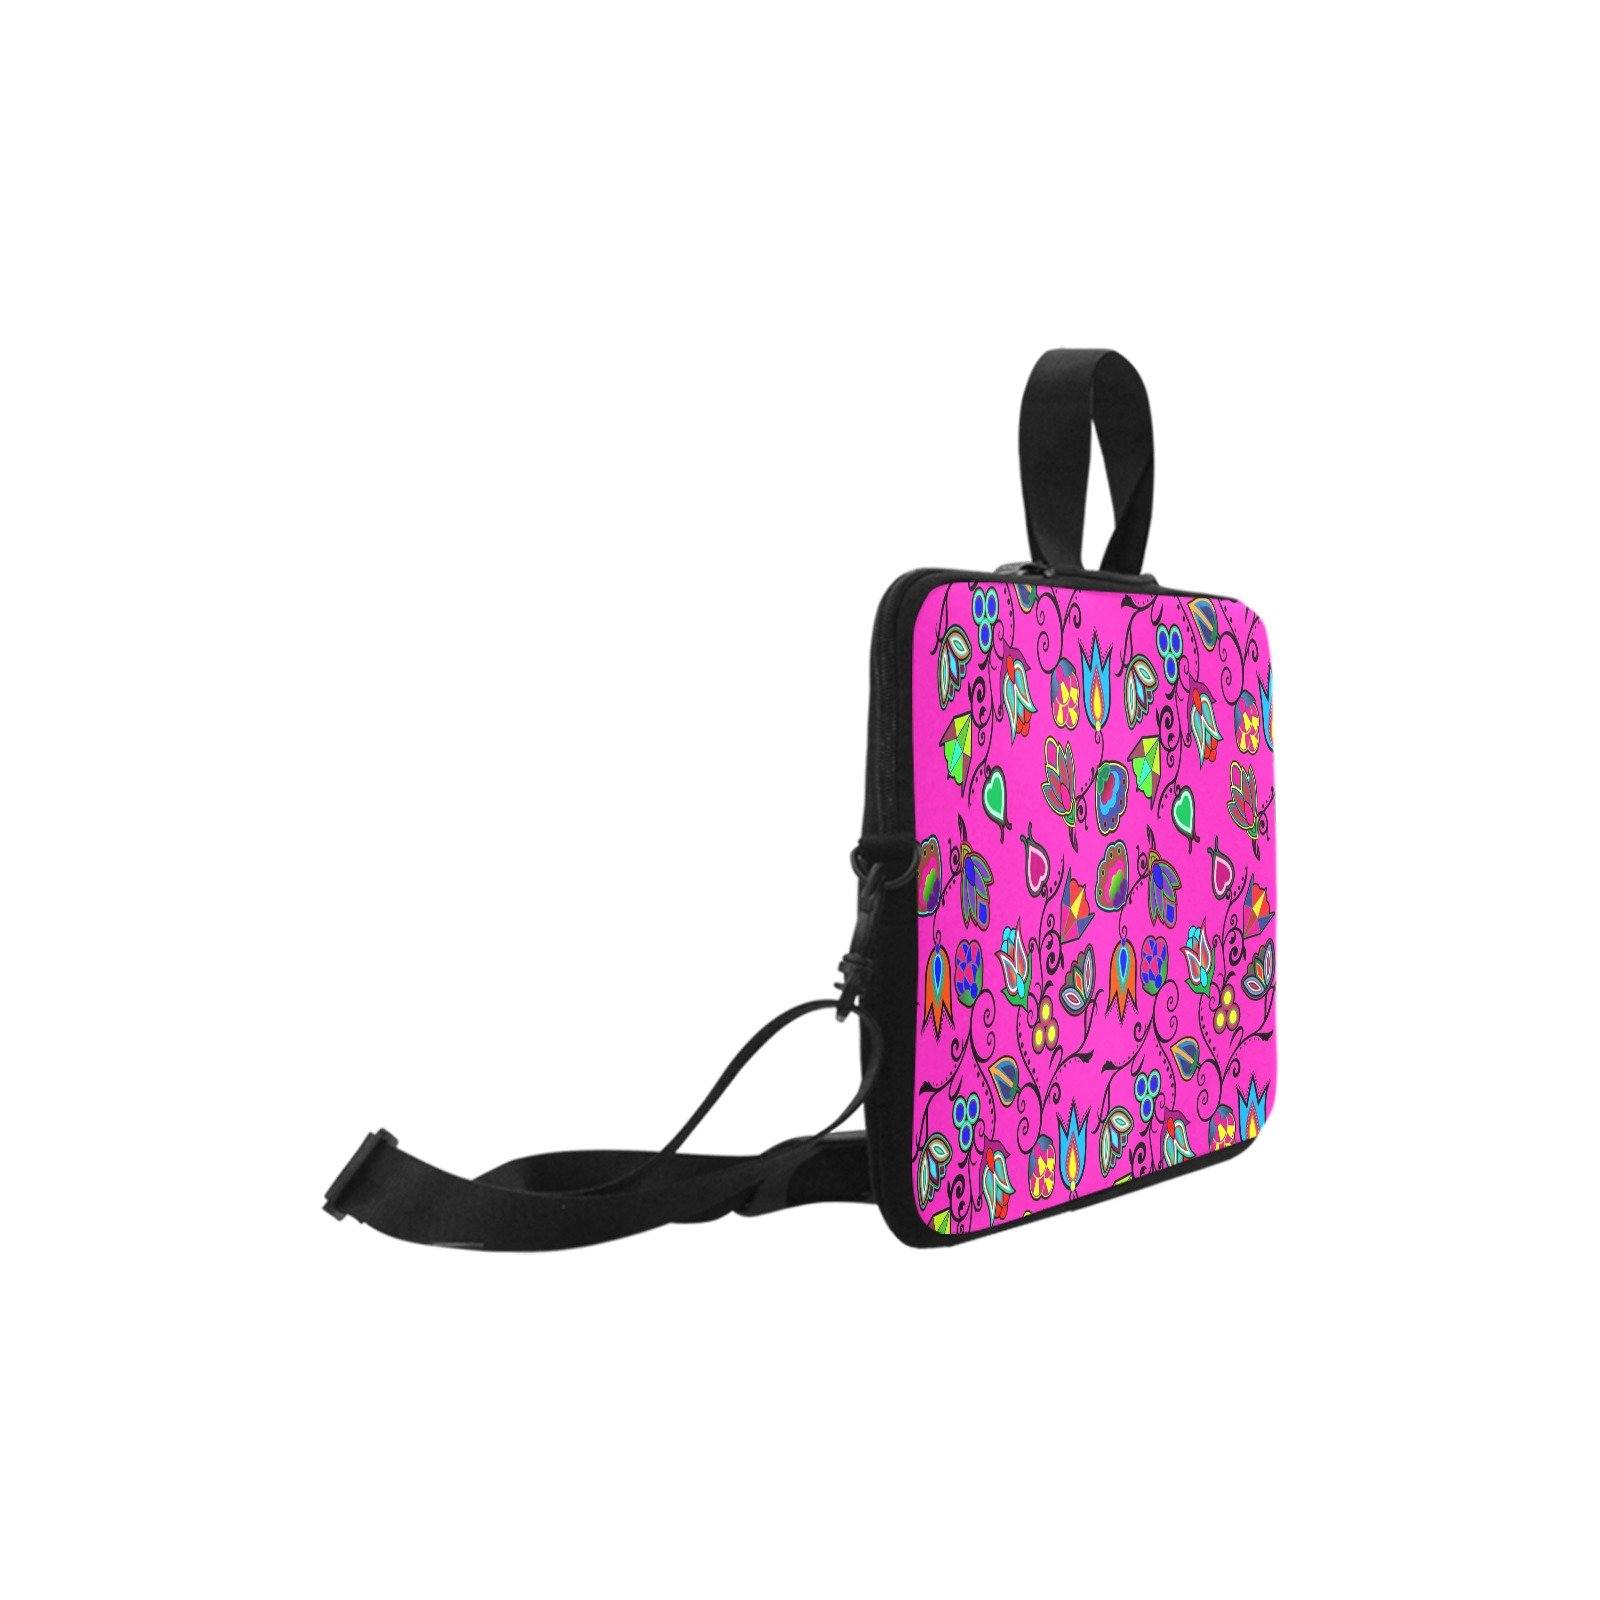 Indigenous Paisley Laptop Handbags 17" bag e-joyer 